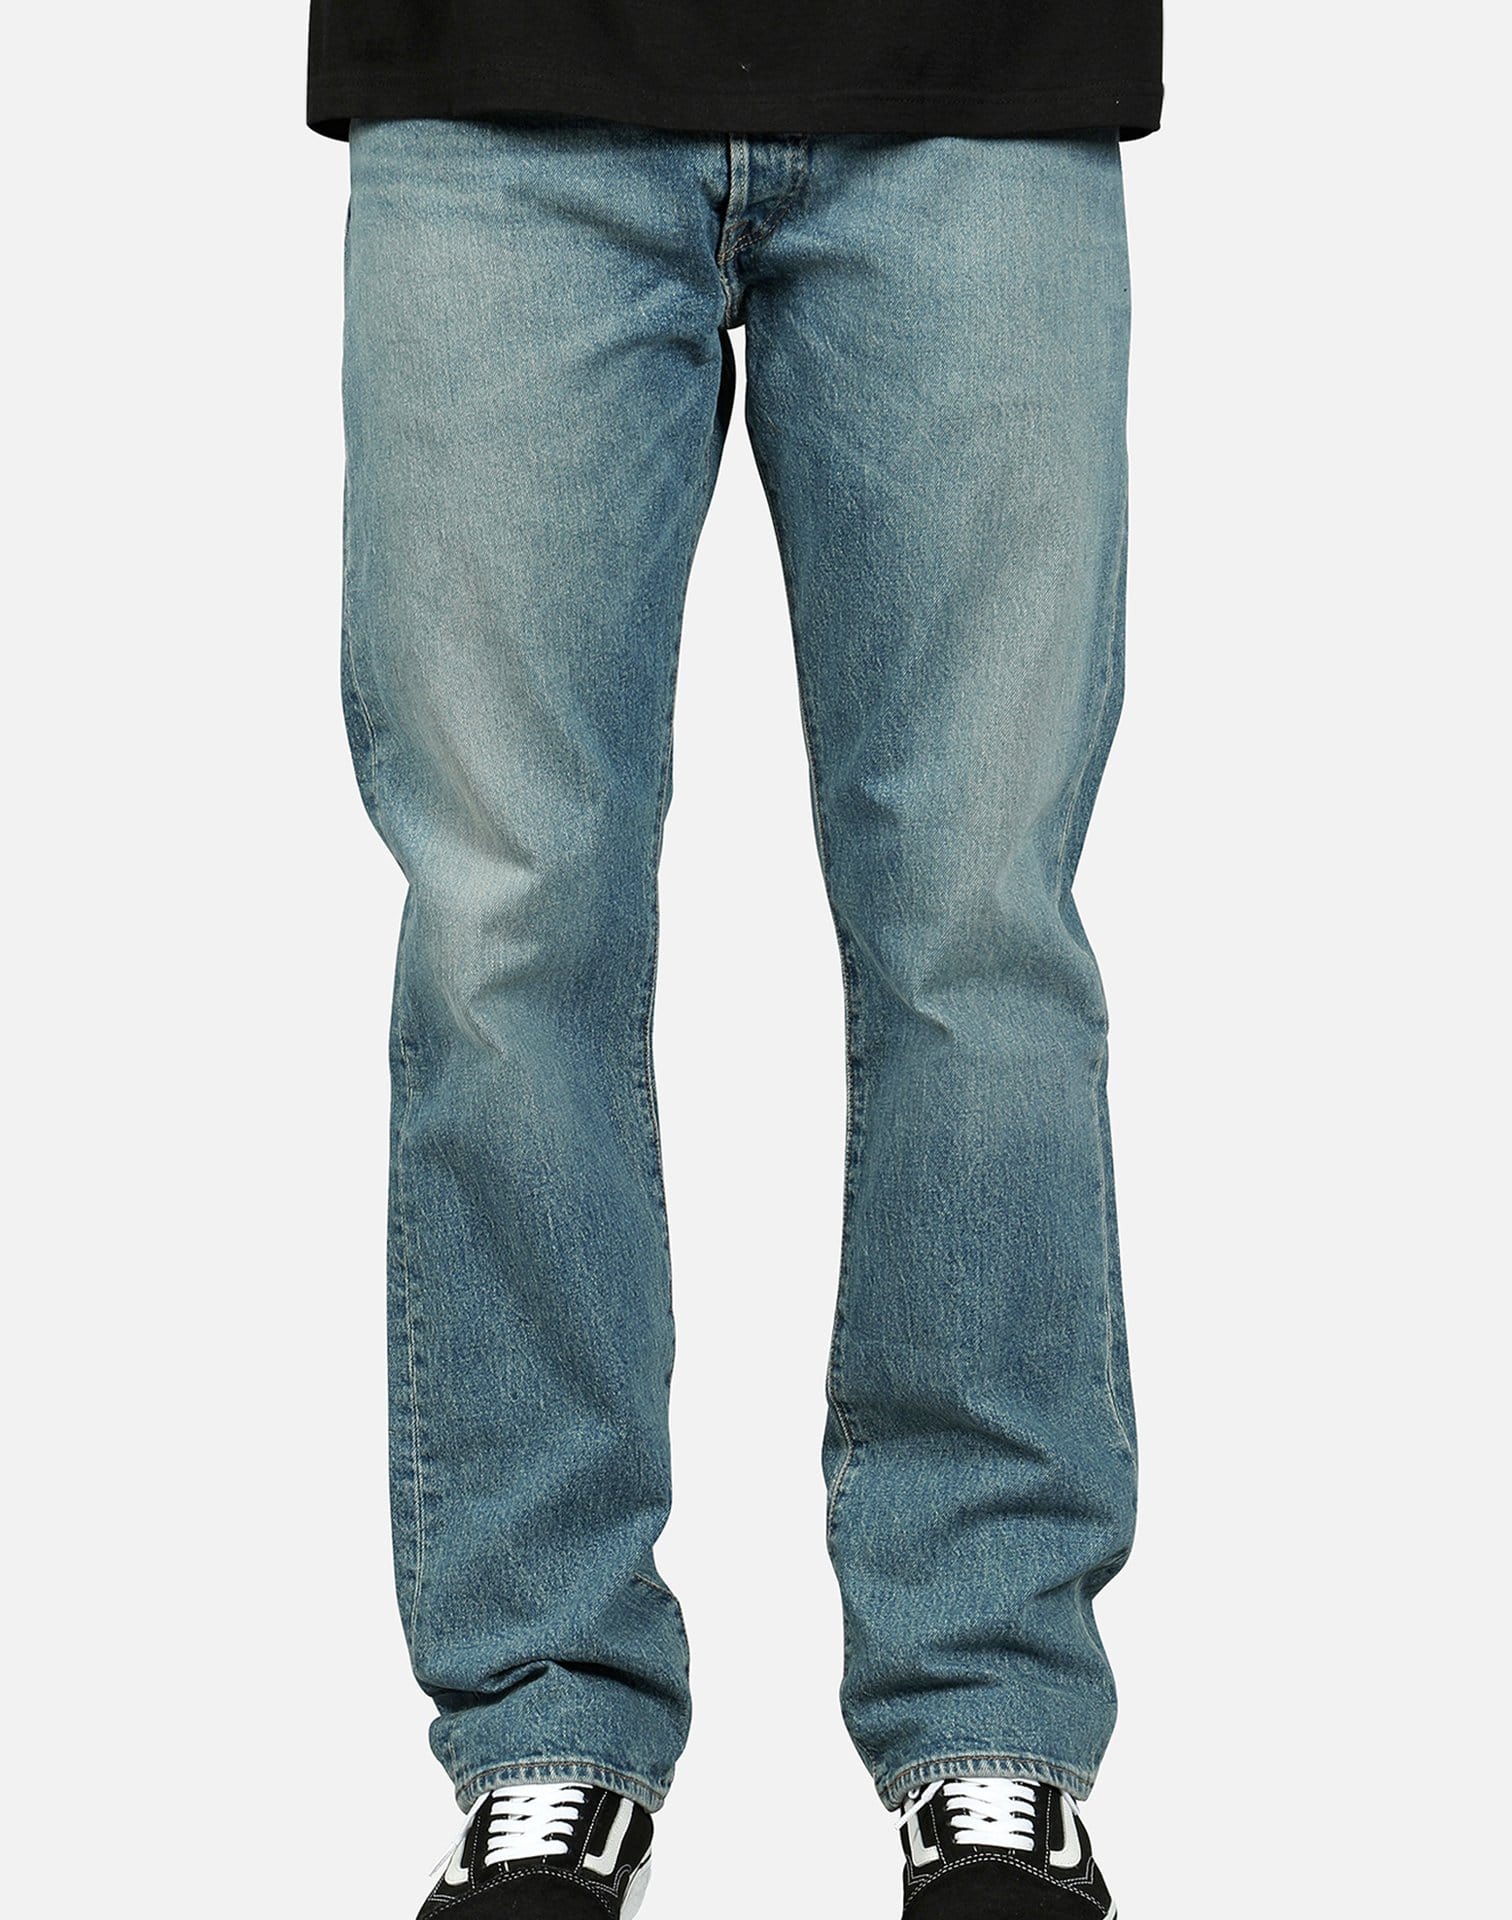 Levi's Men's 501 Original Fit Stretch Jeans